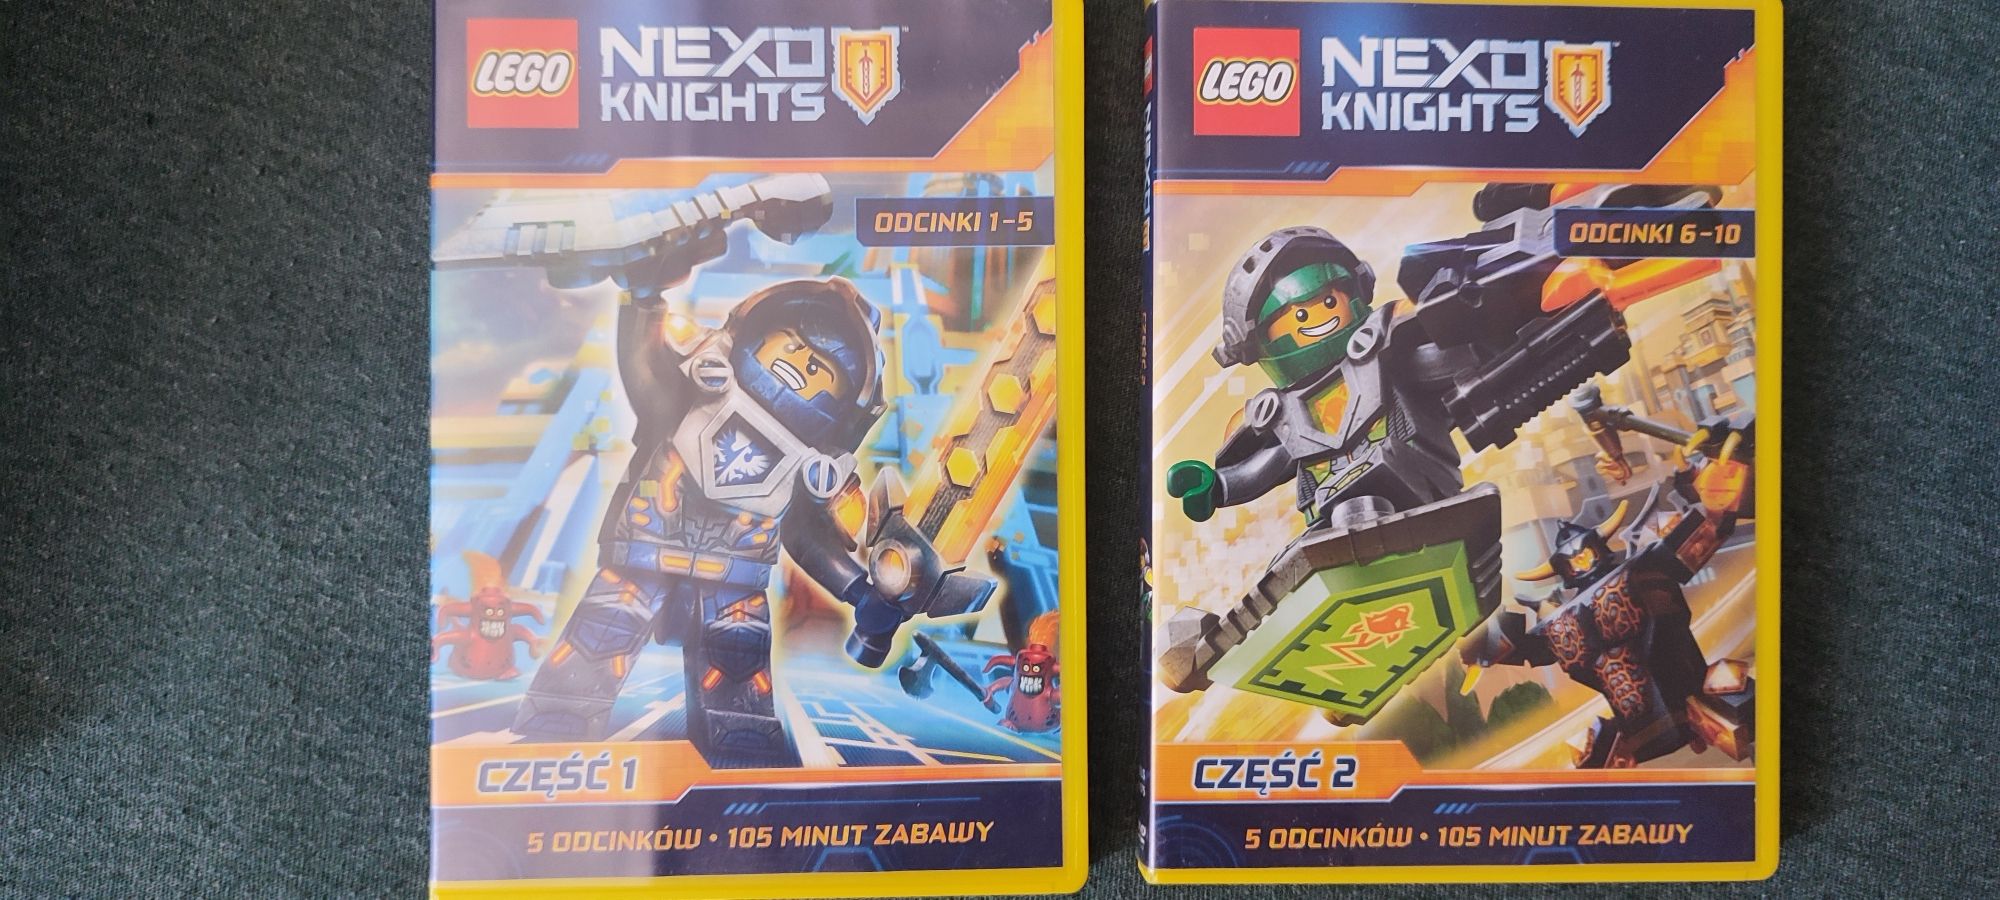 LEGO Nexo Knight płyty dvd bajki